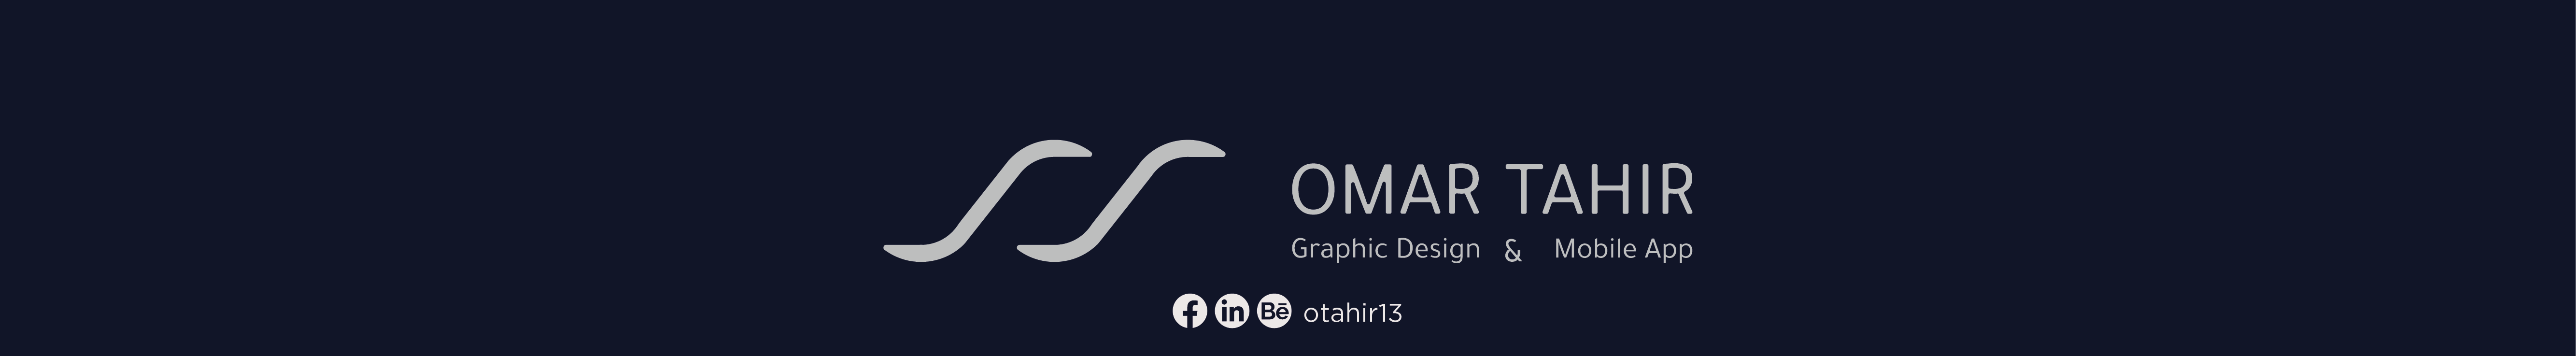 ‪Omar Tahir's profile banner